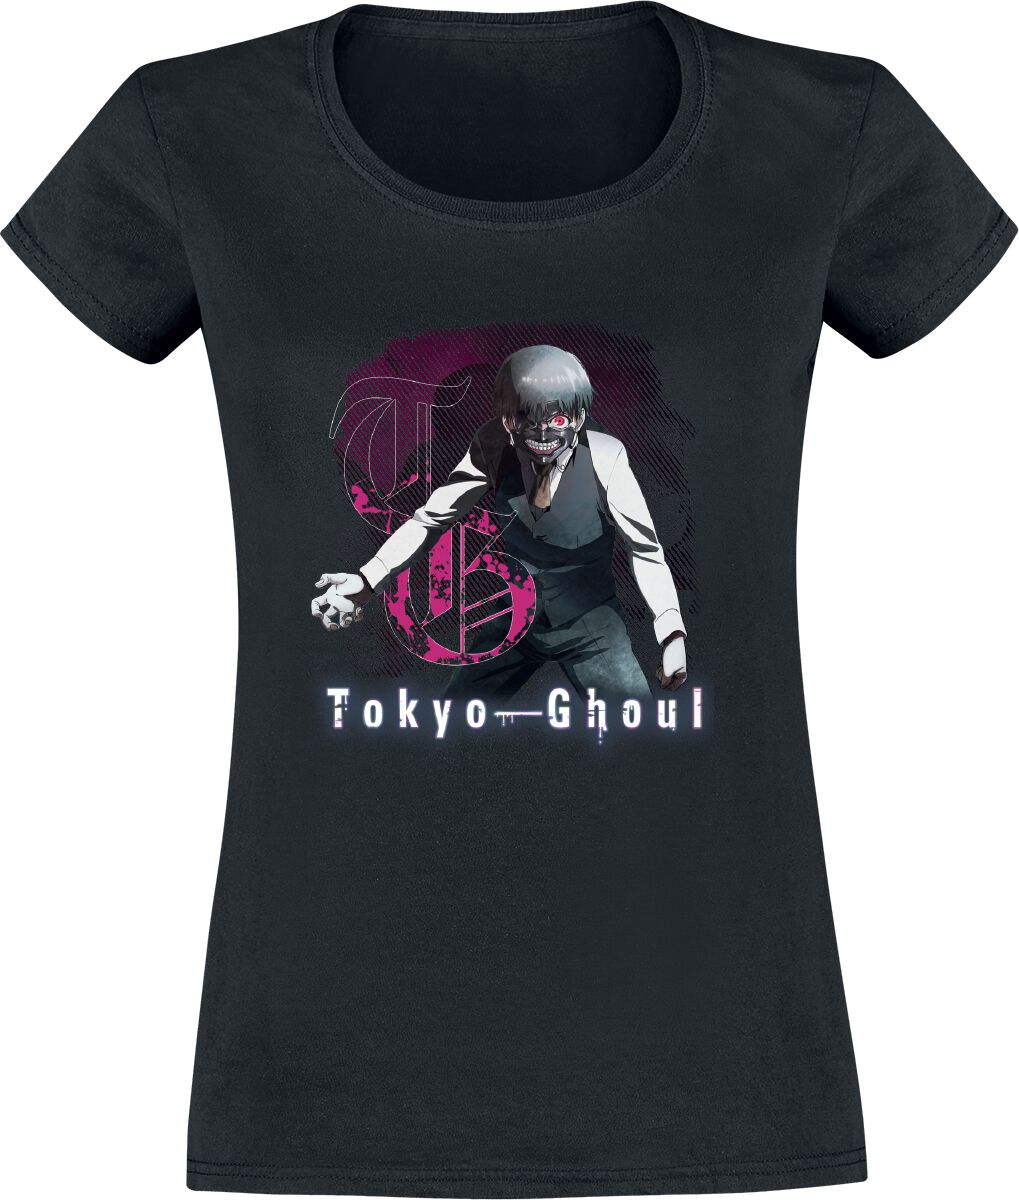 T-Shirt Manches courtes de Tokyo Ghoul - Gothic - S à XXL - pour Femme - noir